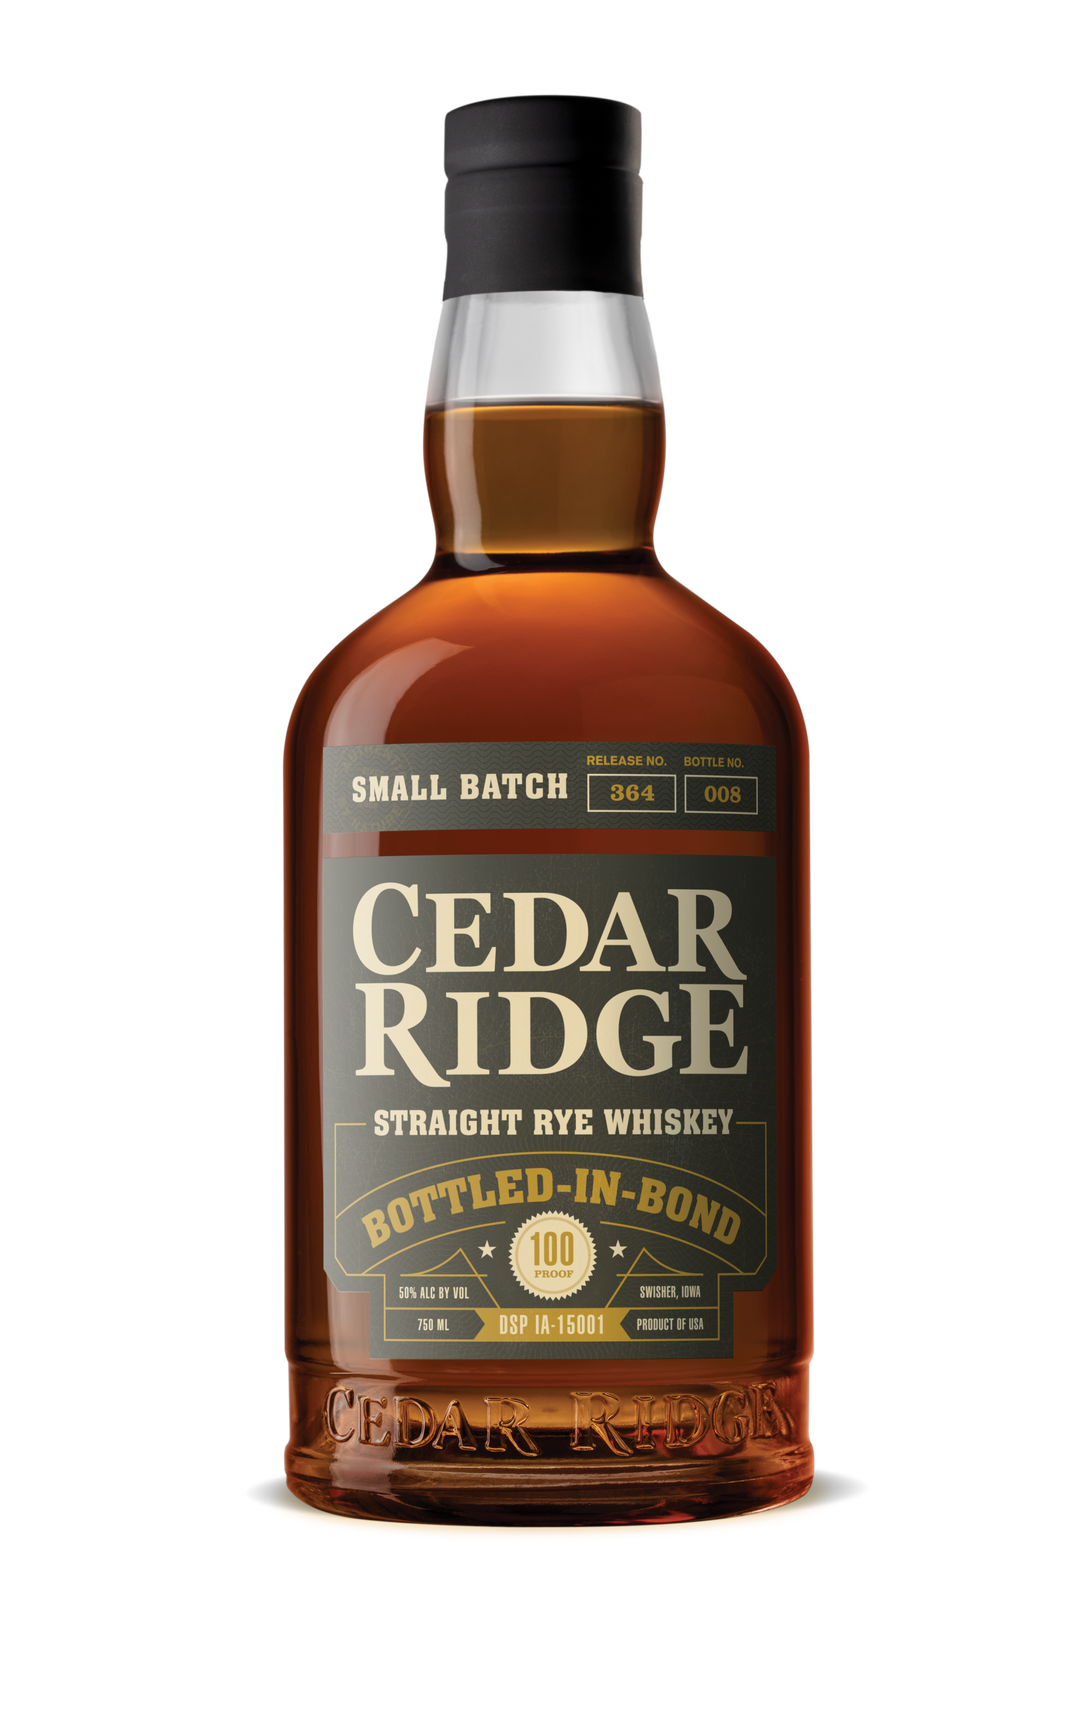 Cedar Ridge Straight Rye Whiskey Bottled-in-Bond